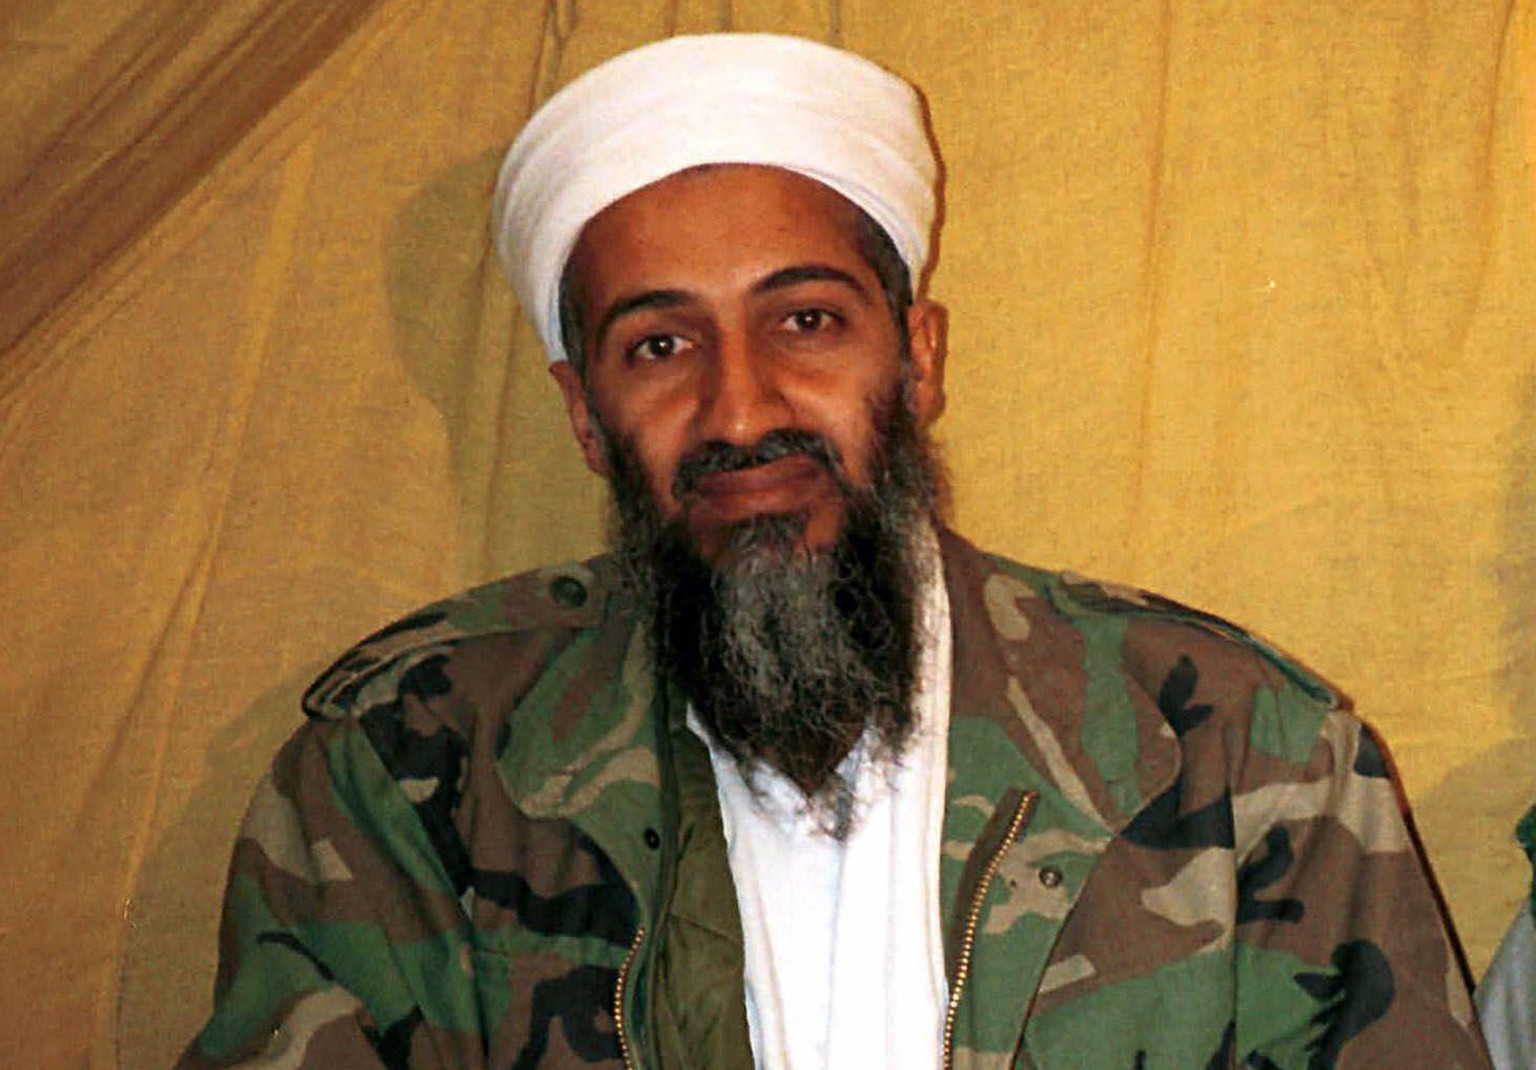 في تفاصيل جديدة حول مقتله.. رأس بن لادن انشطر إلى نصفين